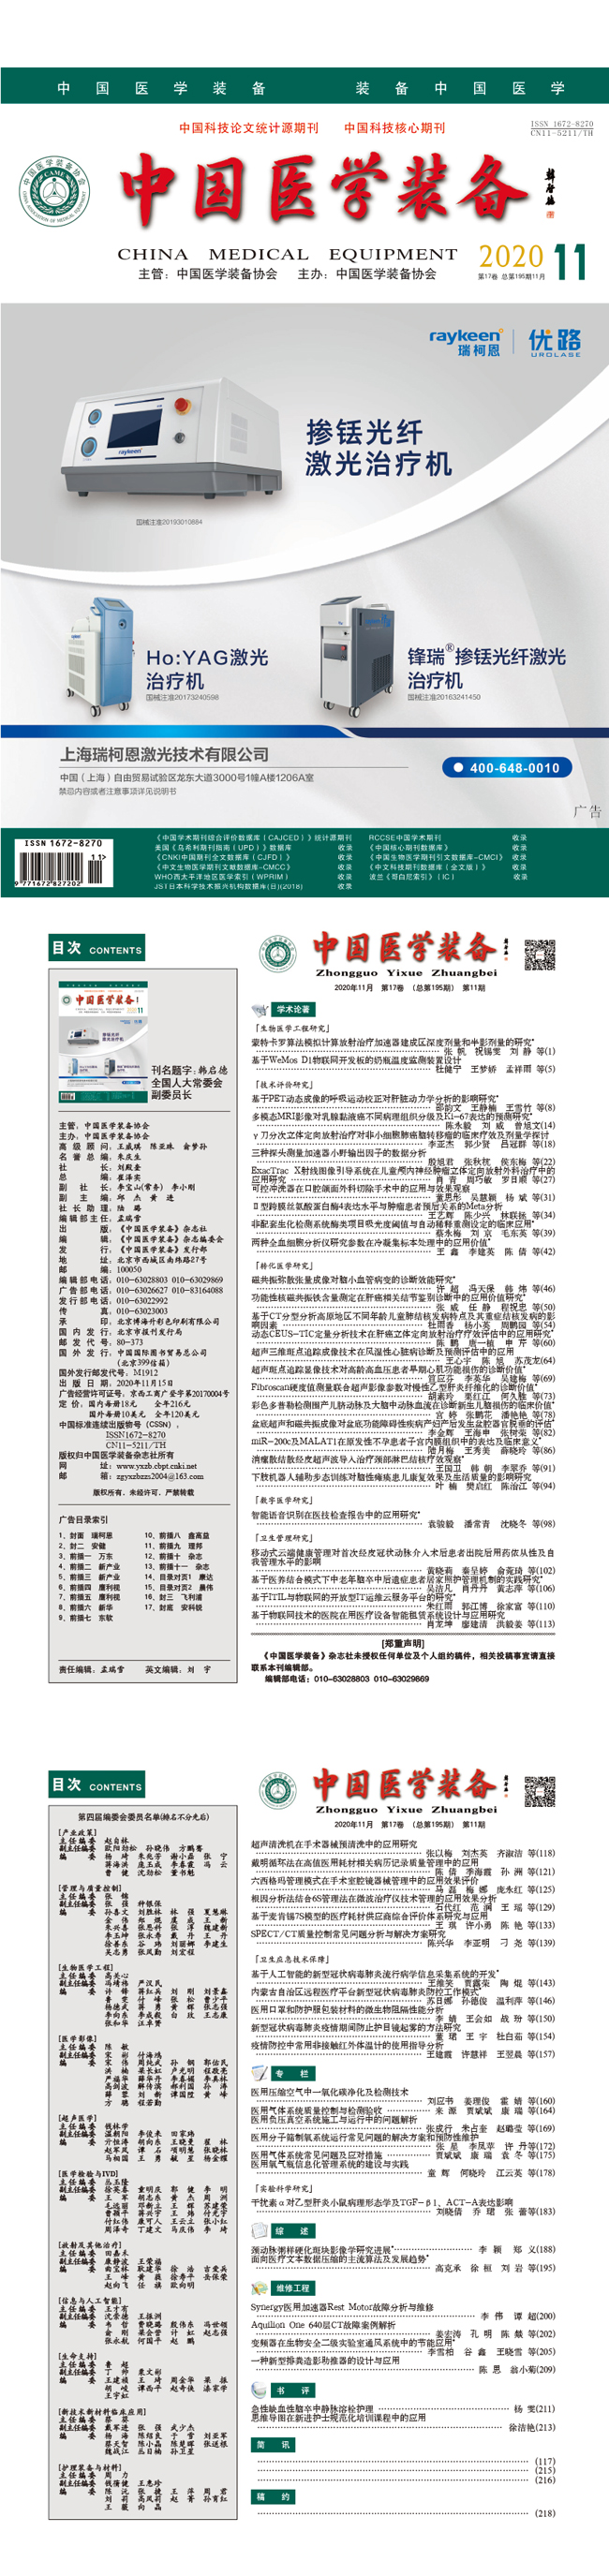 《中国医学装备》2020年11期出版(图1)